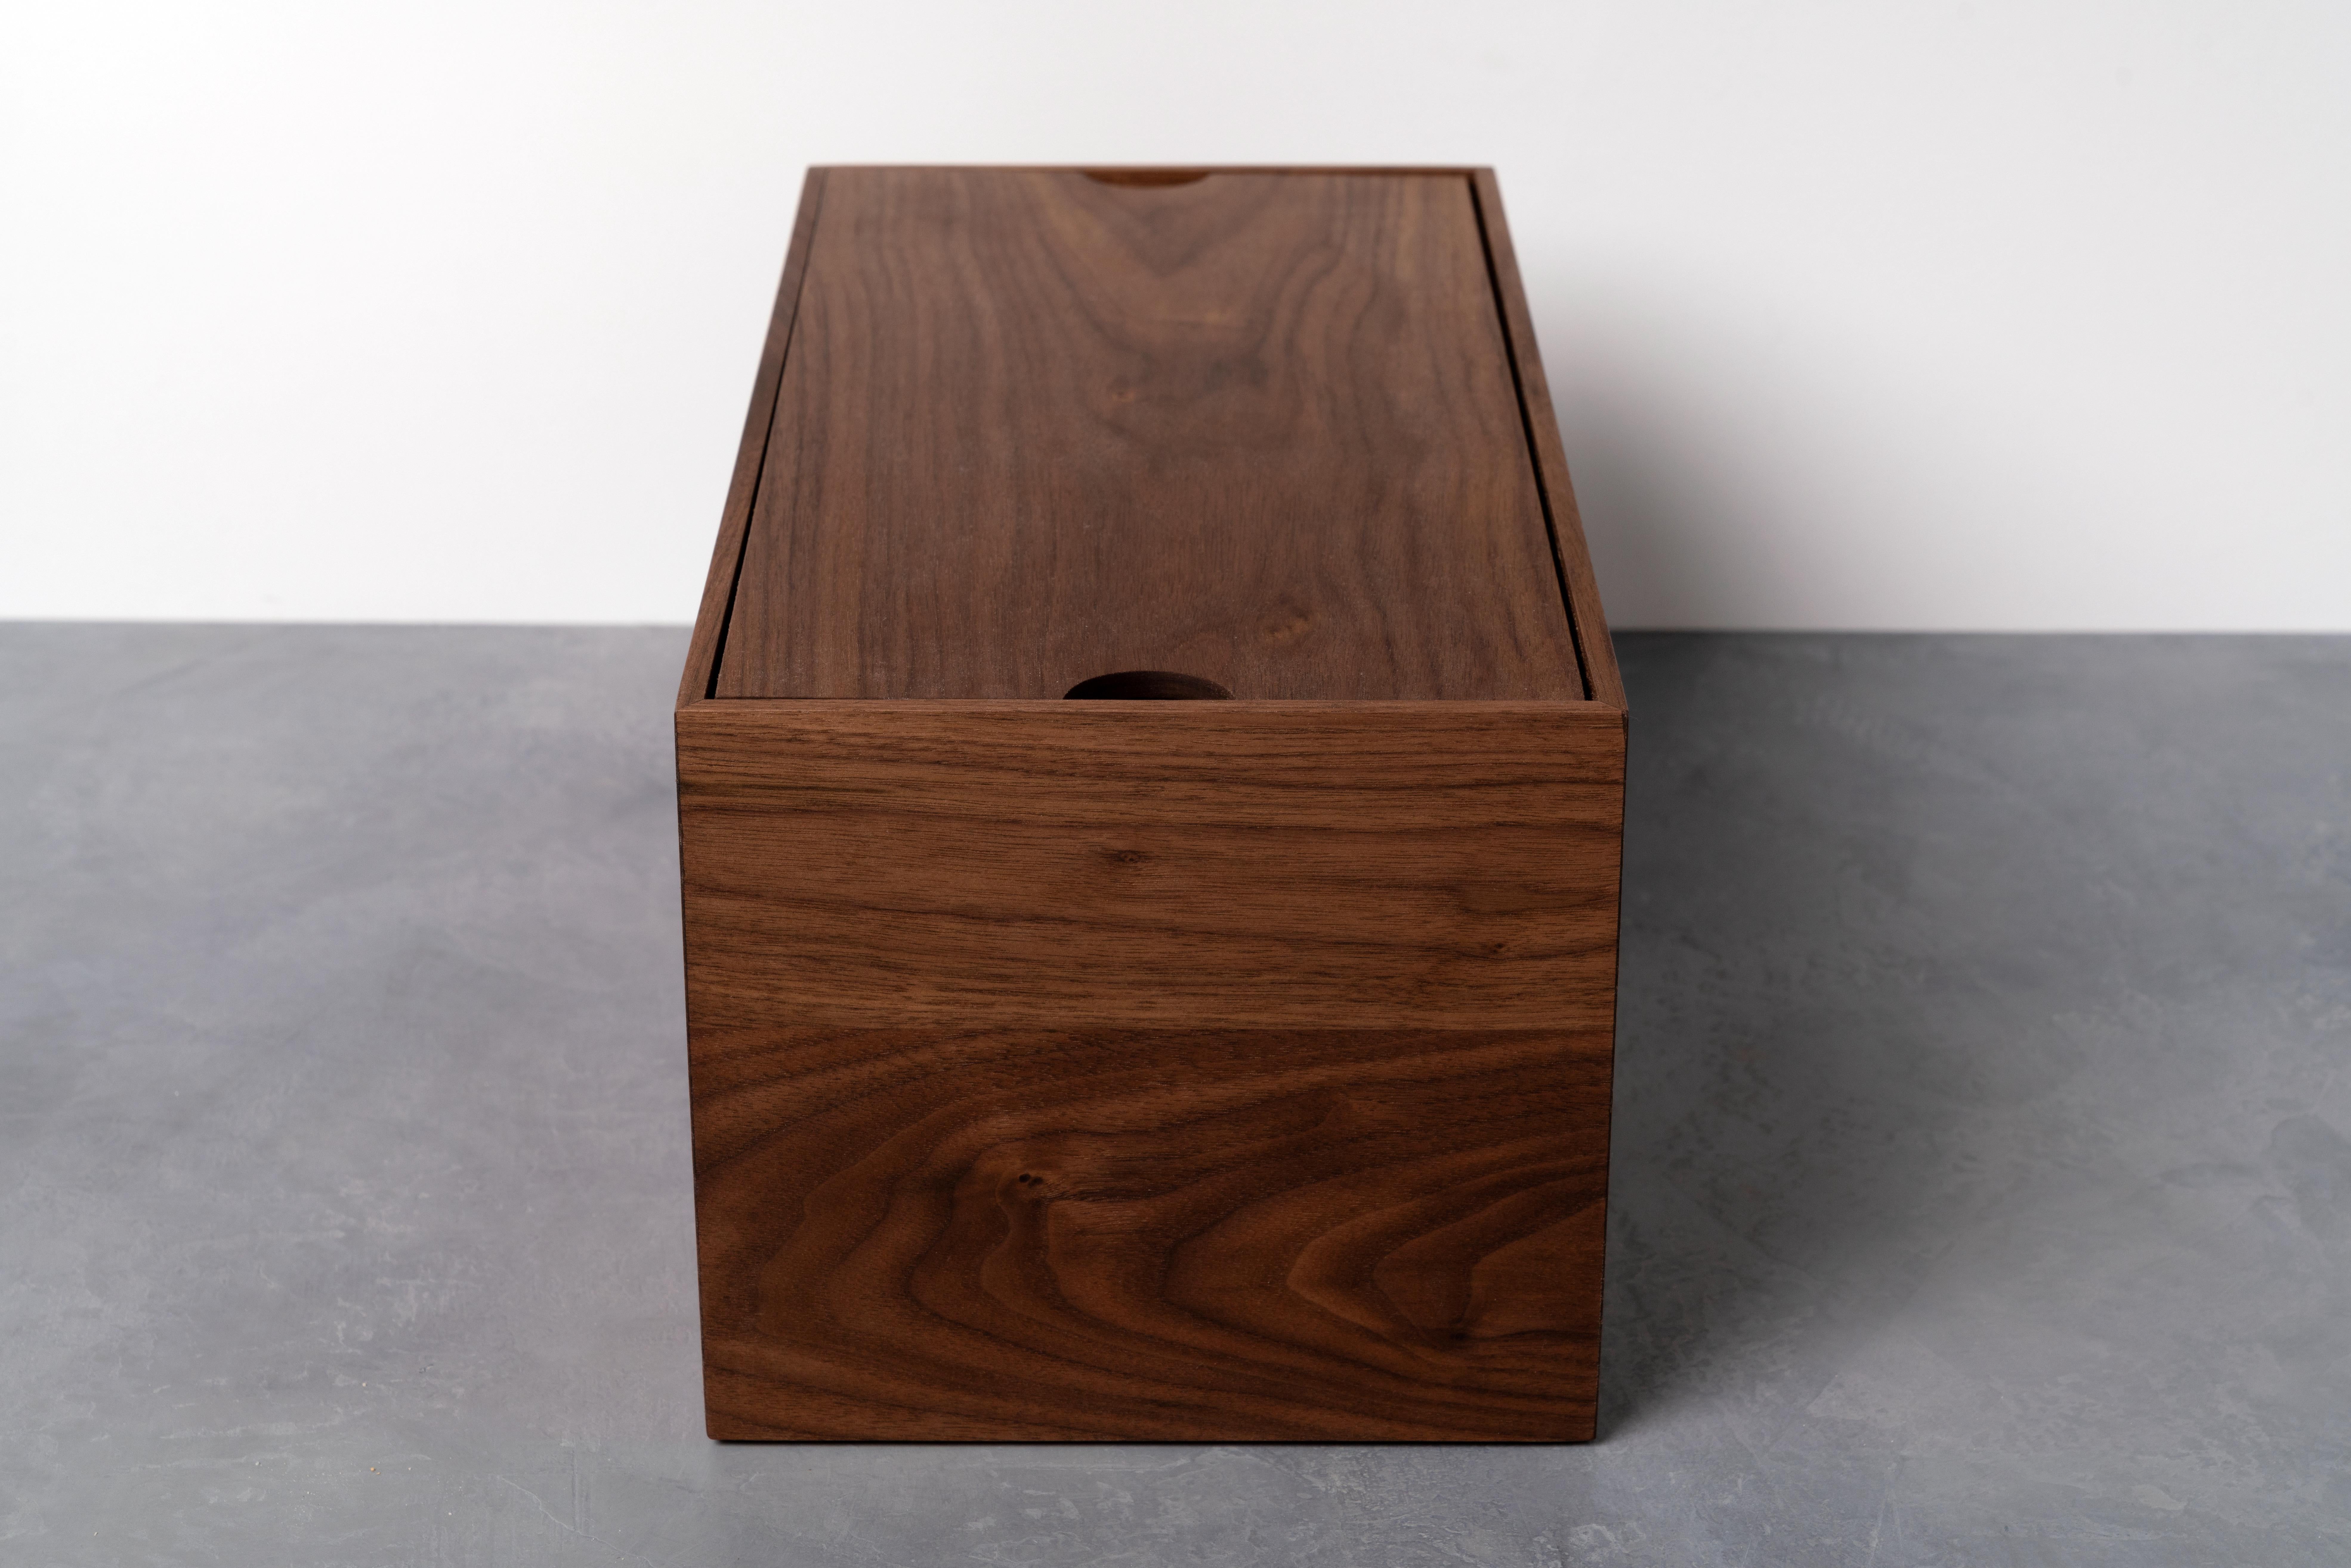 American Modern Walnut Wood Bread Box by Alabama Sawyer